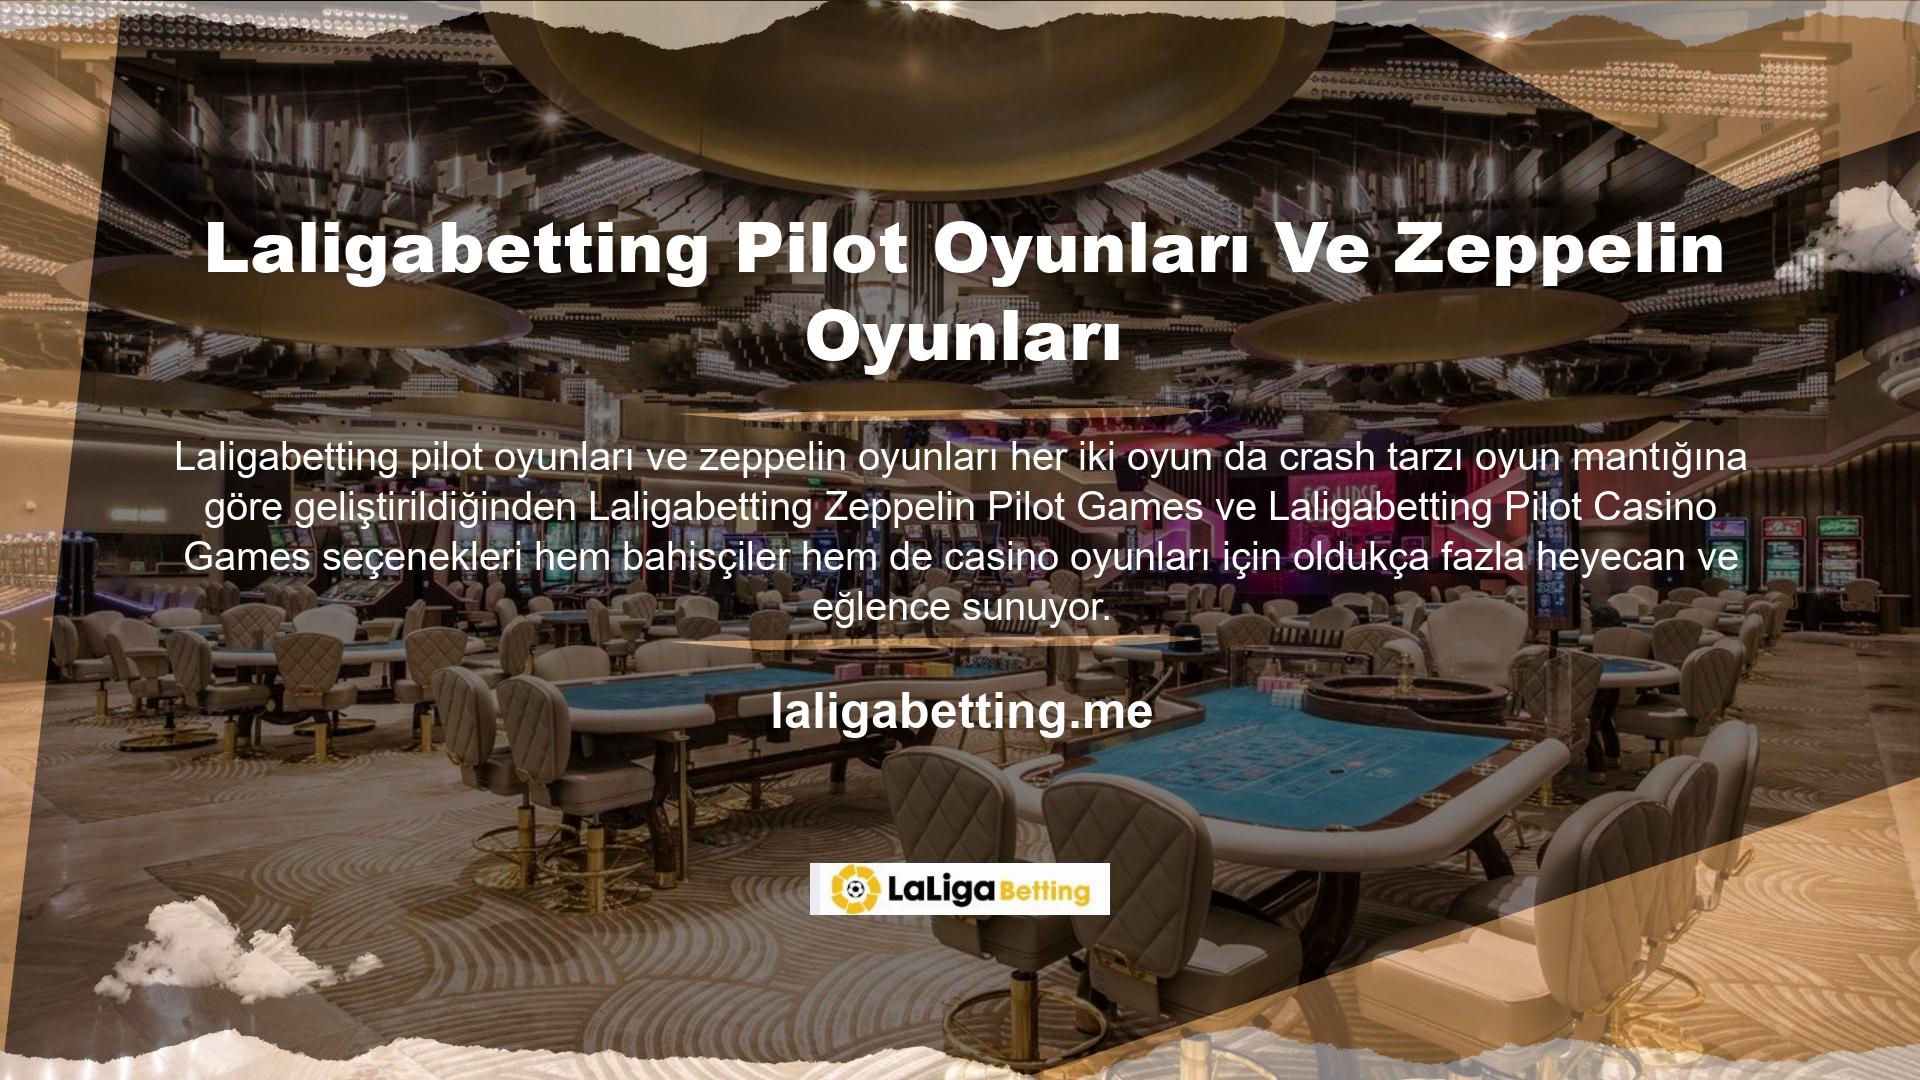 Zeppelin ve Aviator oyunları, yalnızca oyuncu şansına dayanan yeni nesil casino eğlencesine aittir